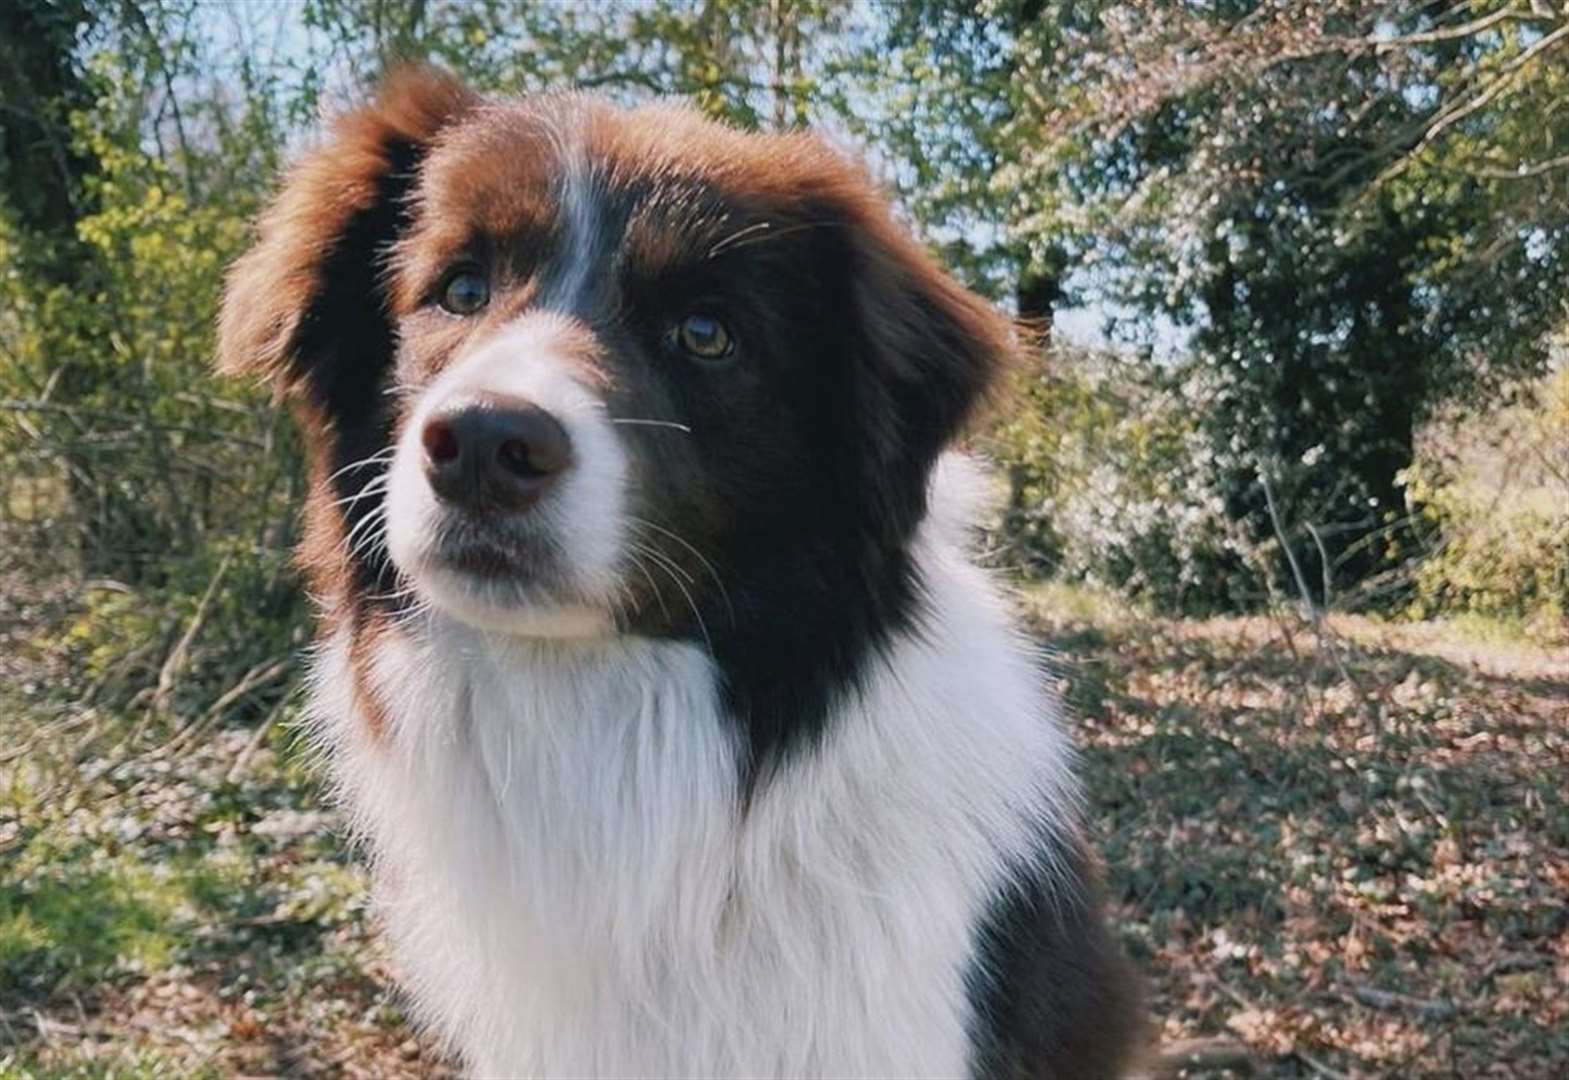 Echo the dog stars in Netflix's Heartstopper